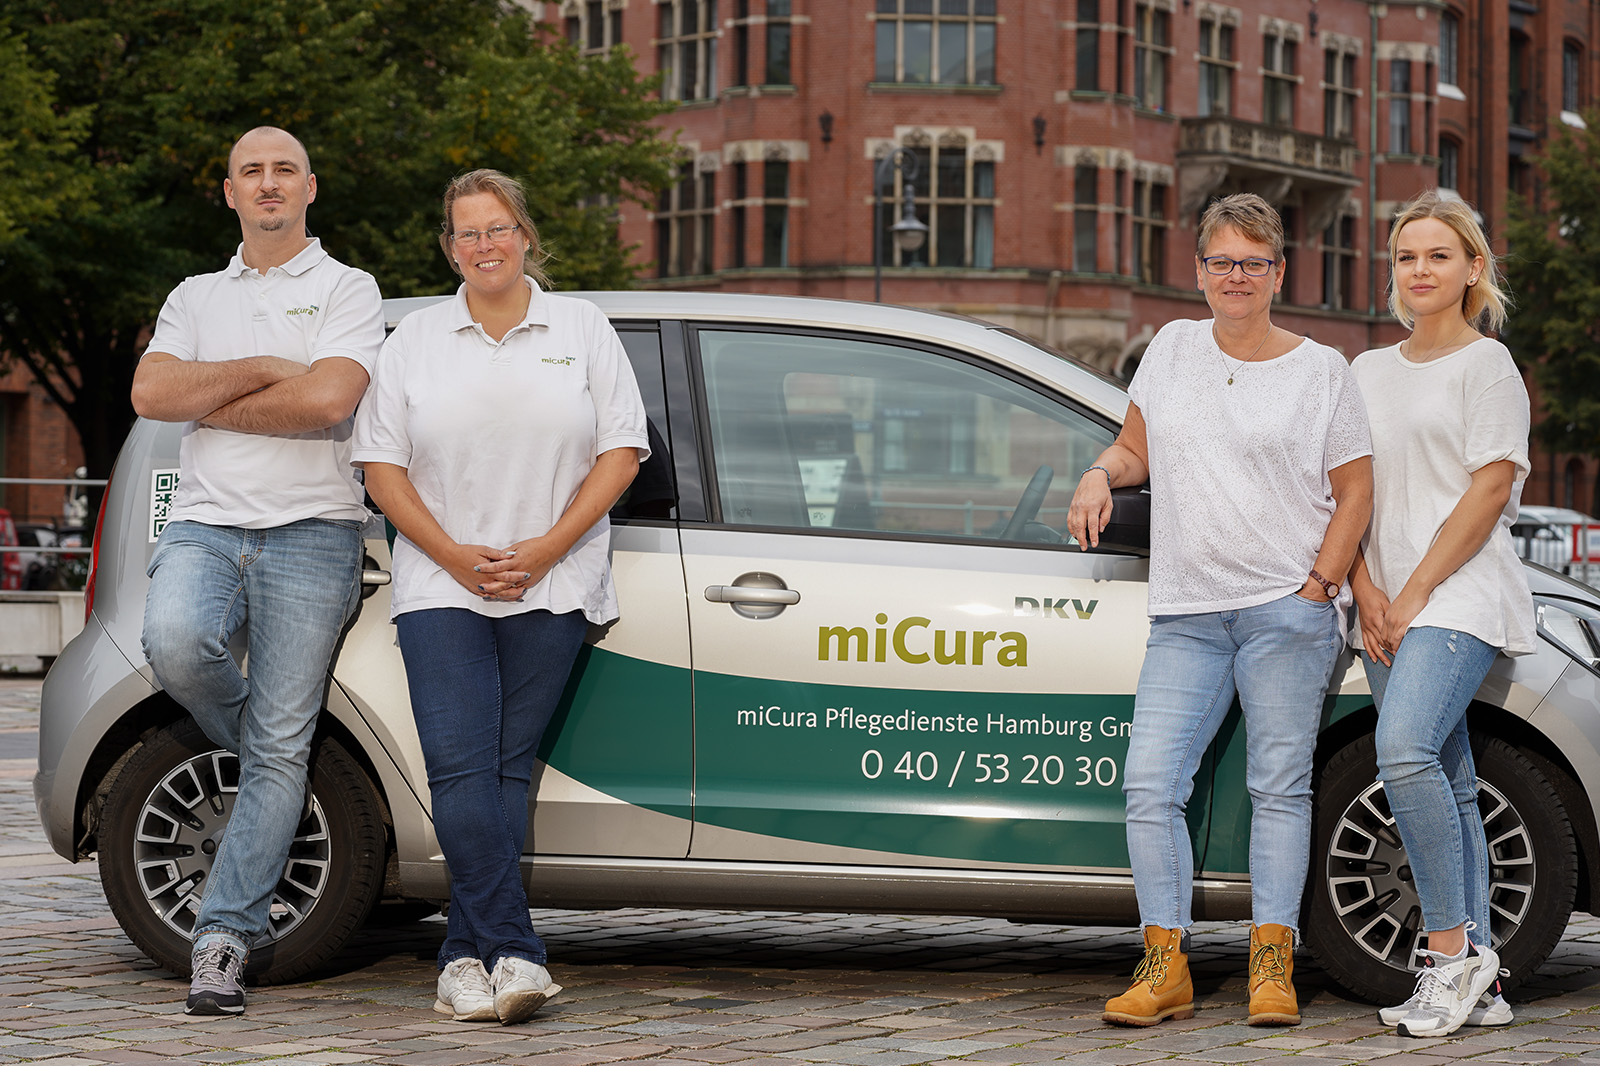 Auf dem Bild sieht man das Team des miCura Standorts Hamburg.